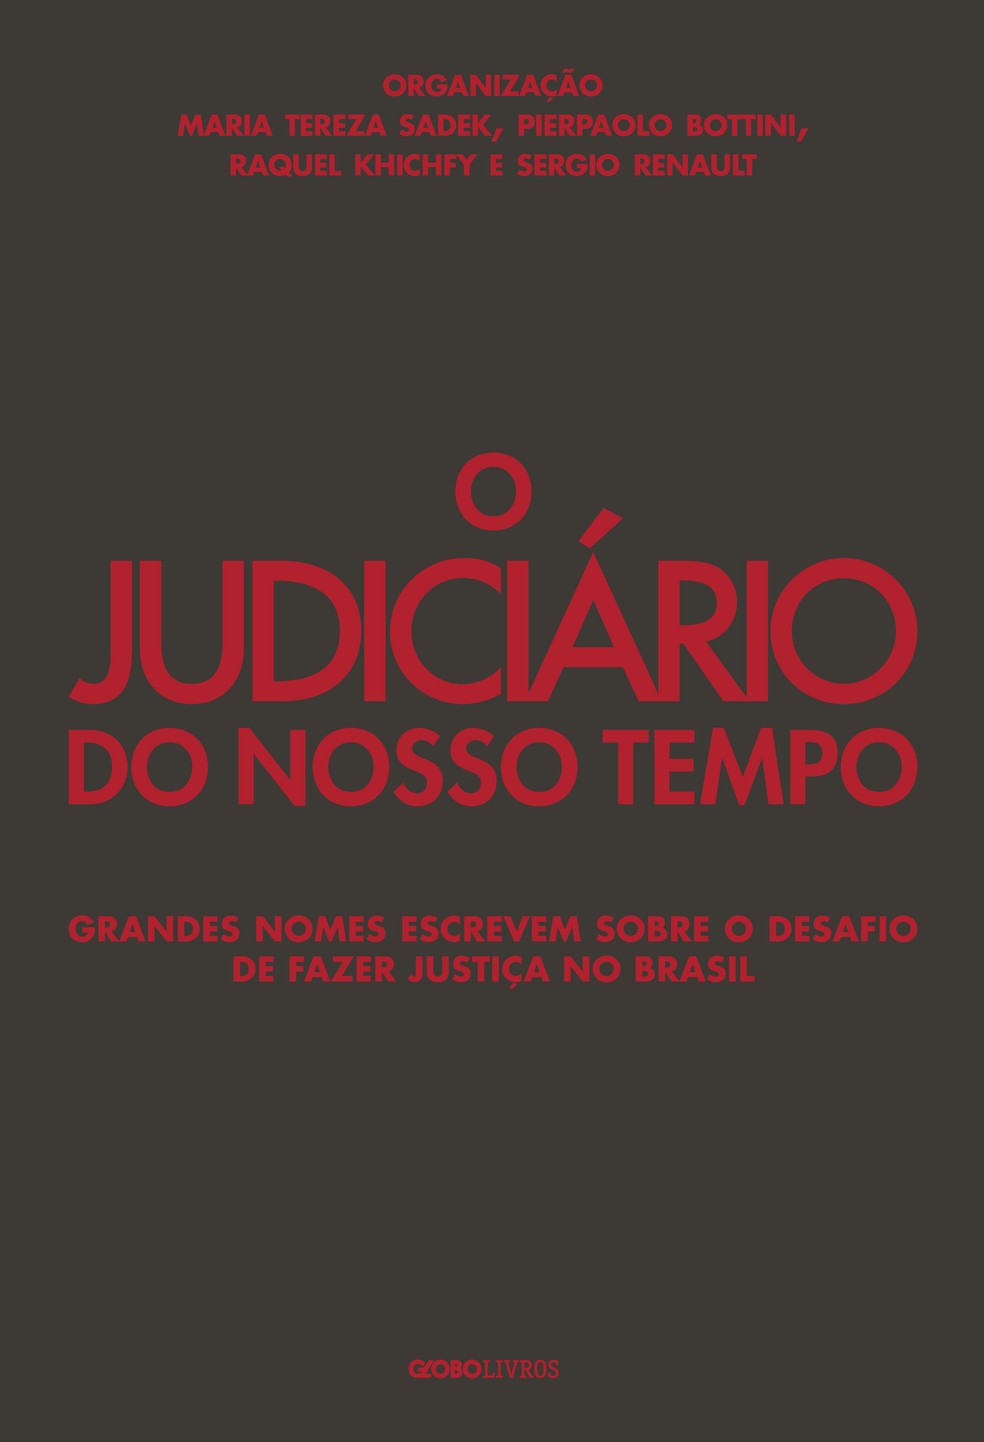 Capa do livro 'O Judiciário do nosso tempo' Divulgação — Foto:         